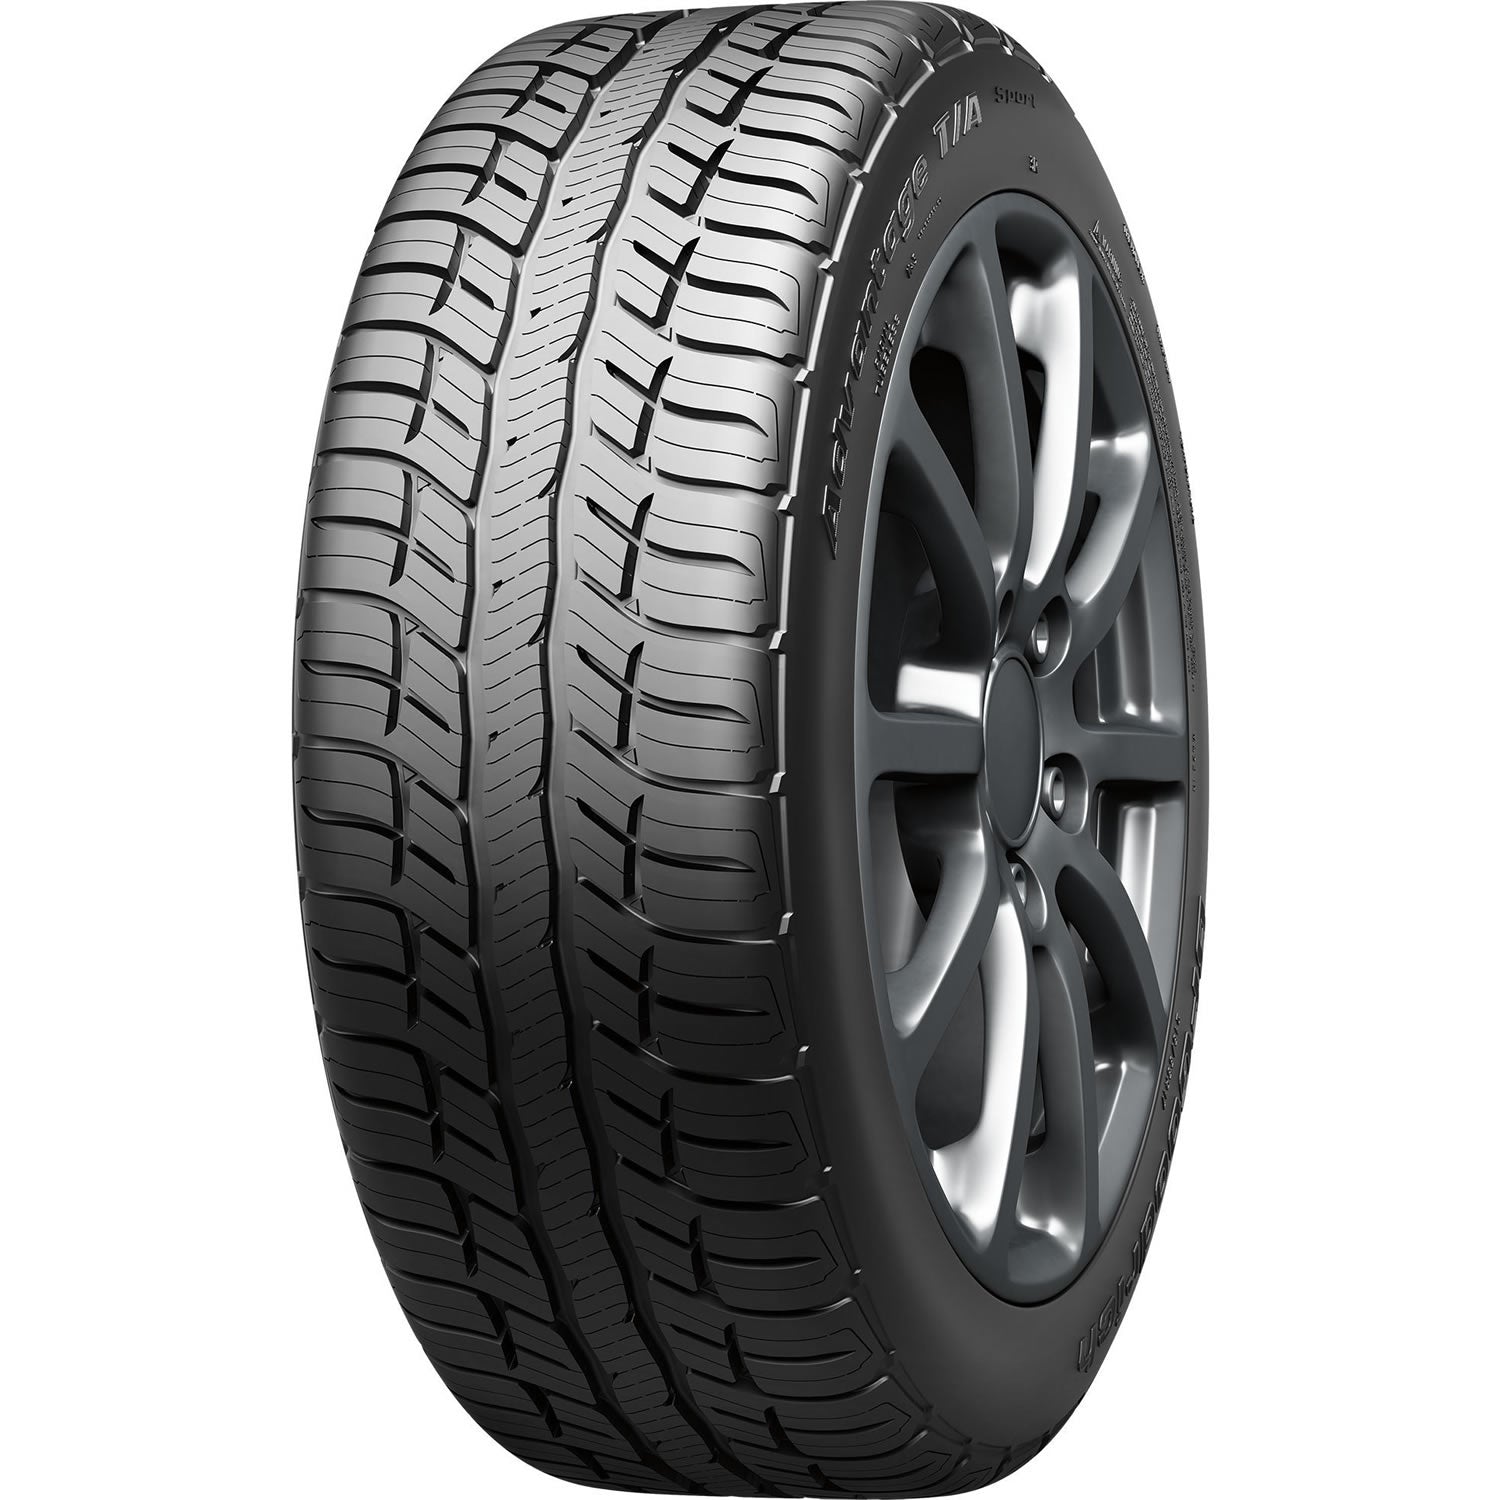 BFGOODRICH ADVANTAGE T/A SPORT 245/65R17 (29.5X9.7R 17) Tires